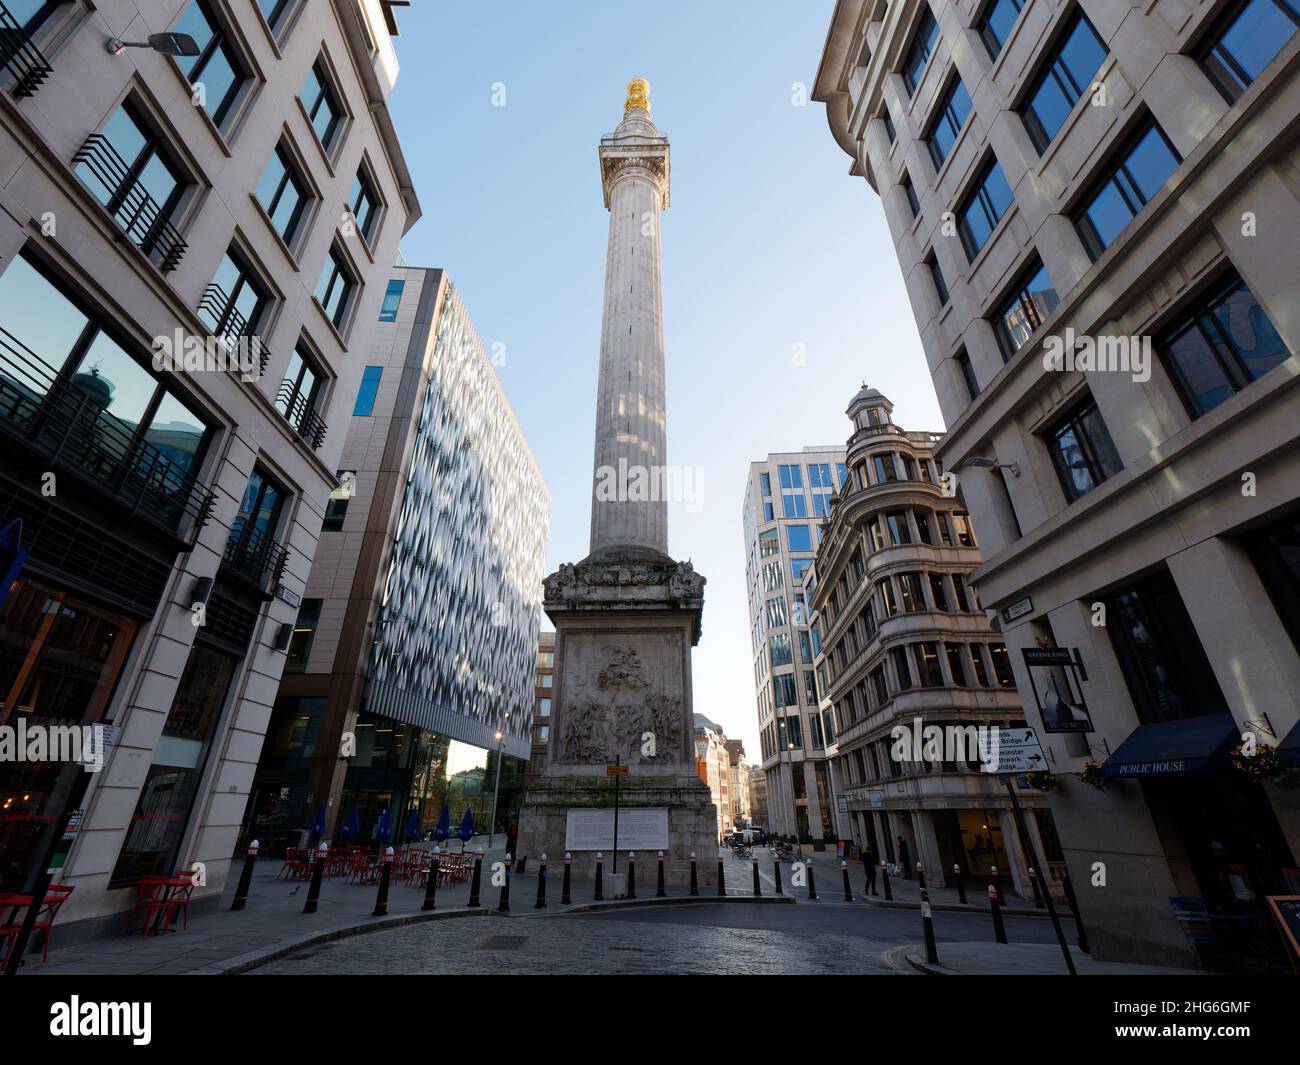 Londres, Grand Londres, Angleterre, janvier 5th 2022 : le Monument, une célèbre colonne et attraction touristique construite pour commémorer le Grand incendie de Londres. Banque D'Images